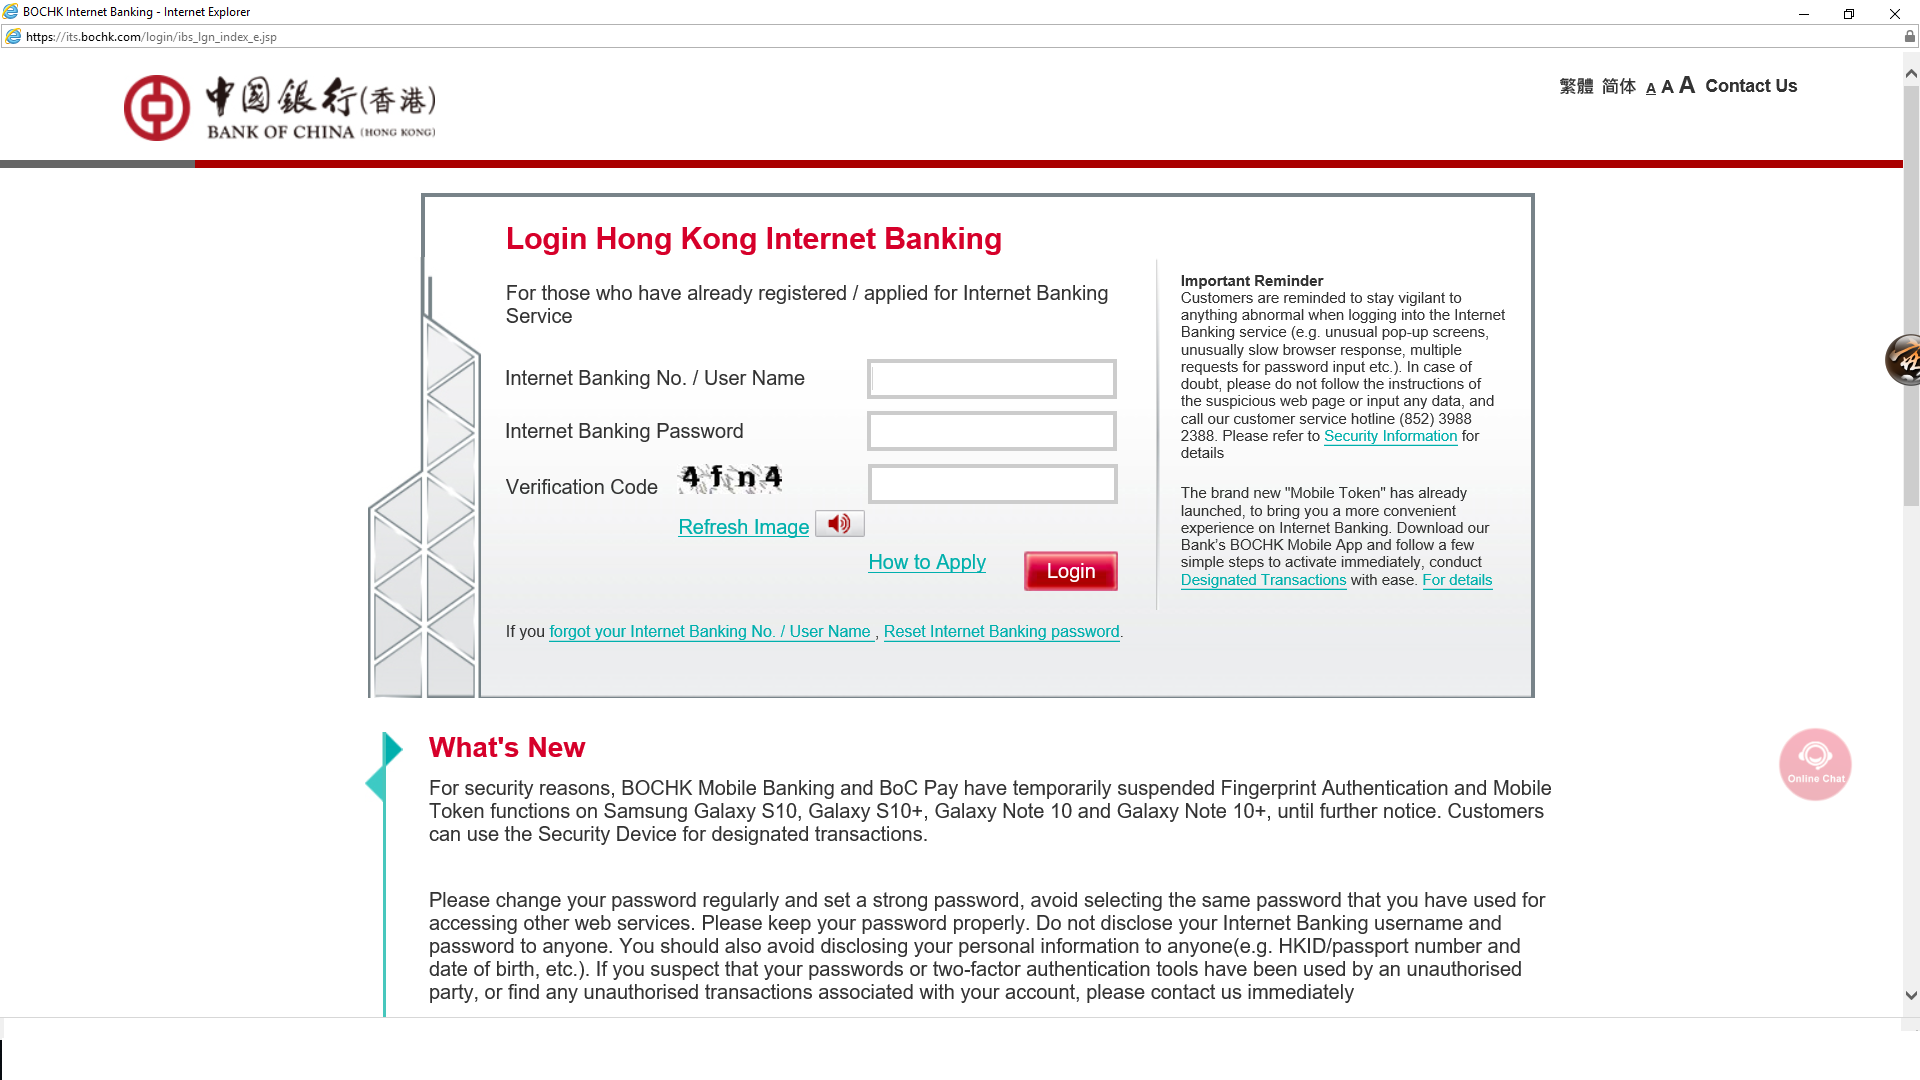 Paying Premium Via Bank Of China Hong Kong Internet Banking